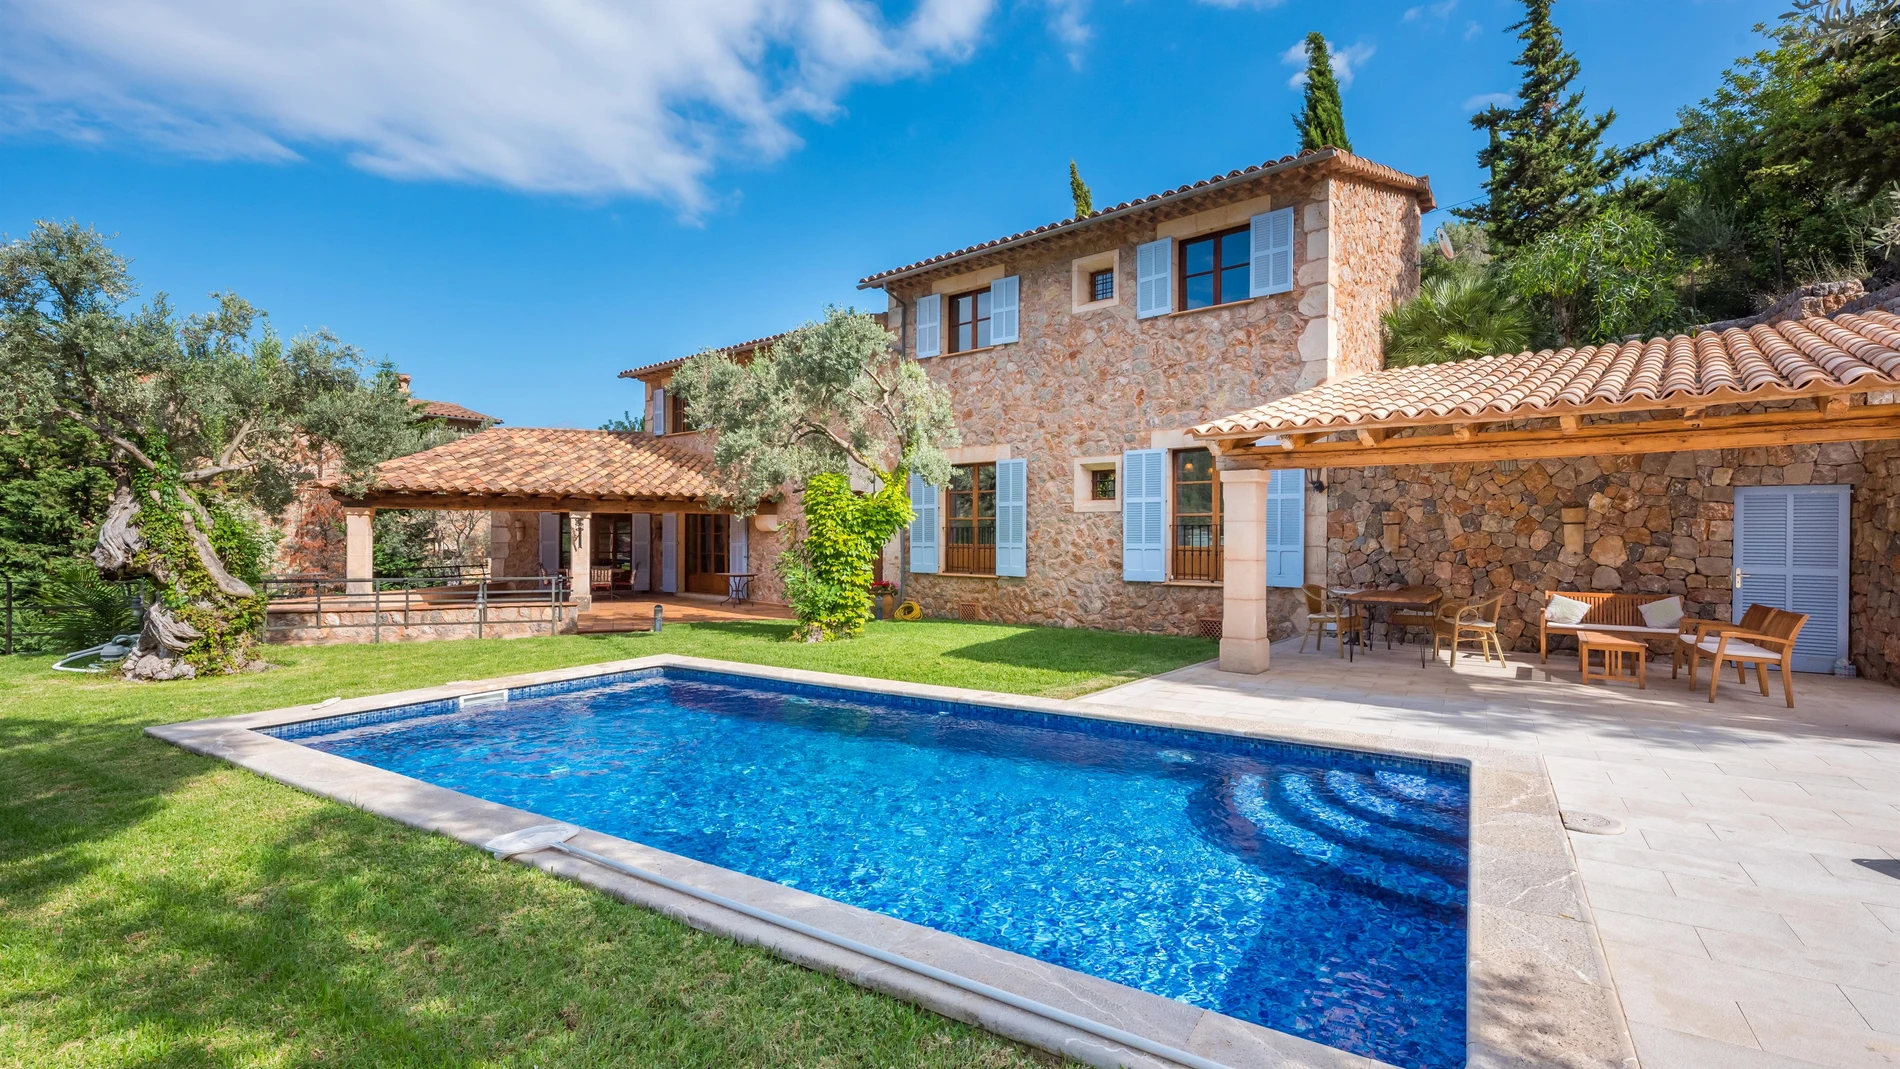 Engel&Völkers registra 217 millones en la venta de viviendas de lujo en Mallorca entre enero y julio